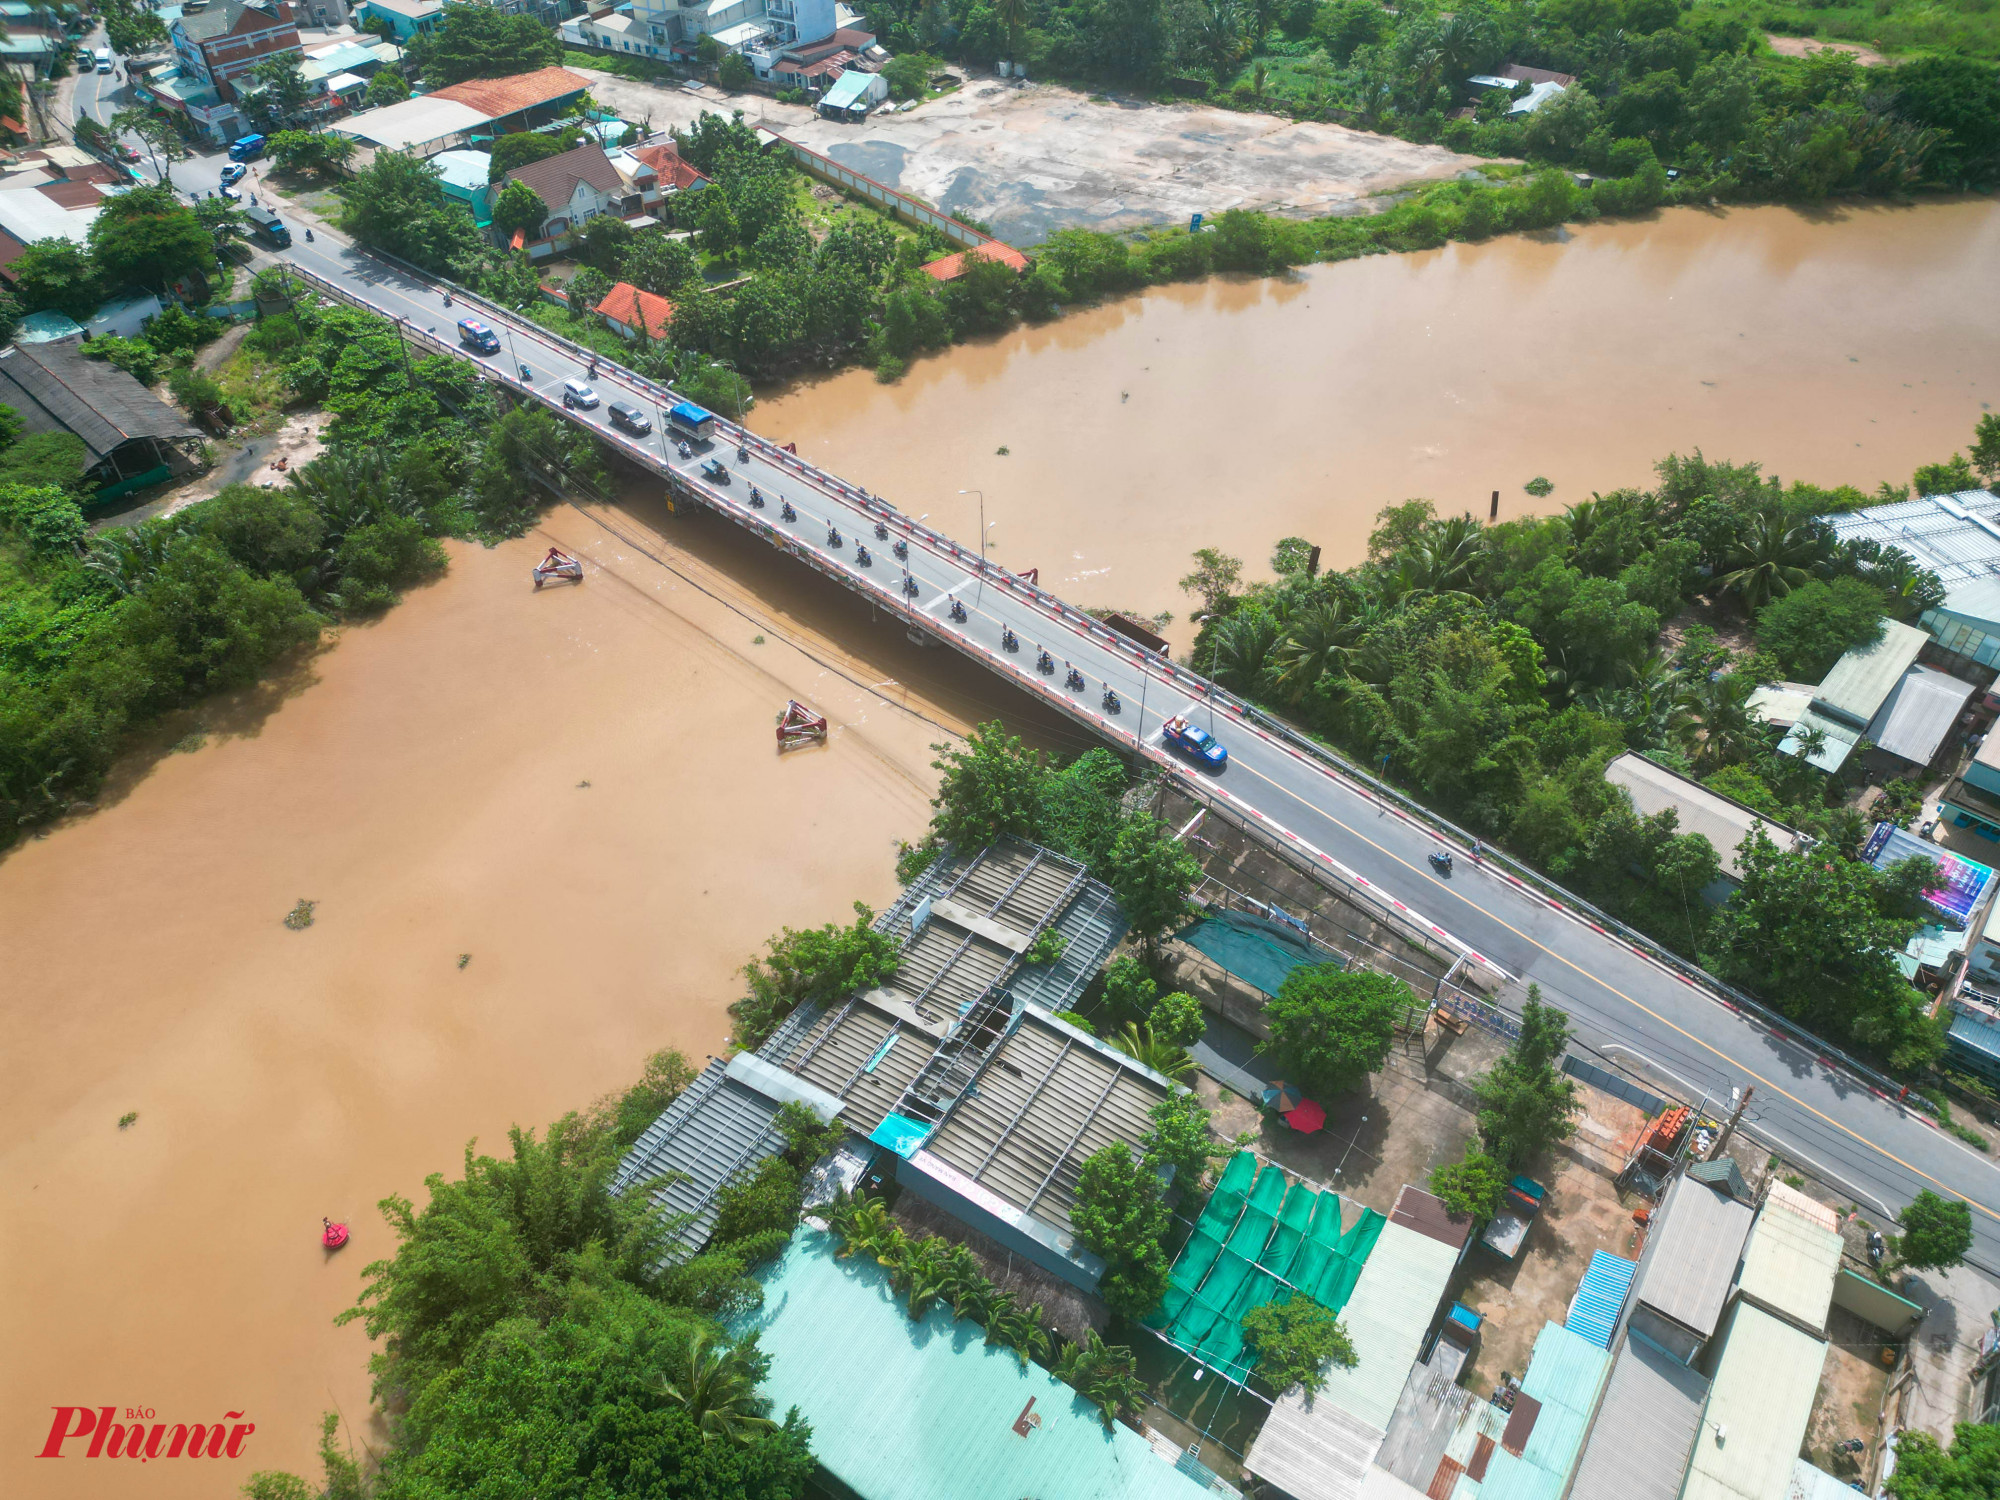 Cuối cùng là dự án cầu Ông Nhiêu, nằm trên đường Nguyễn Duy Trinh cũng được khởi công từ năm 2017, song tổng tiến độ dự án chỉ đạt 1% cũng sắp tái khởi động.